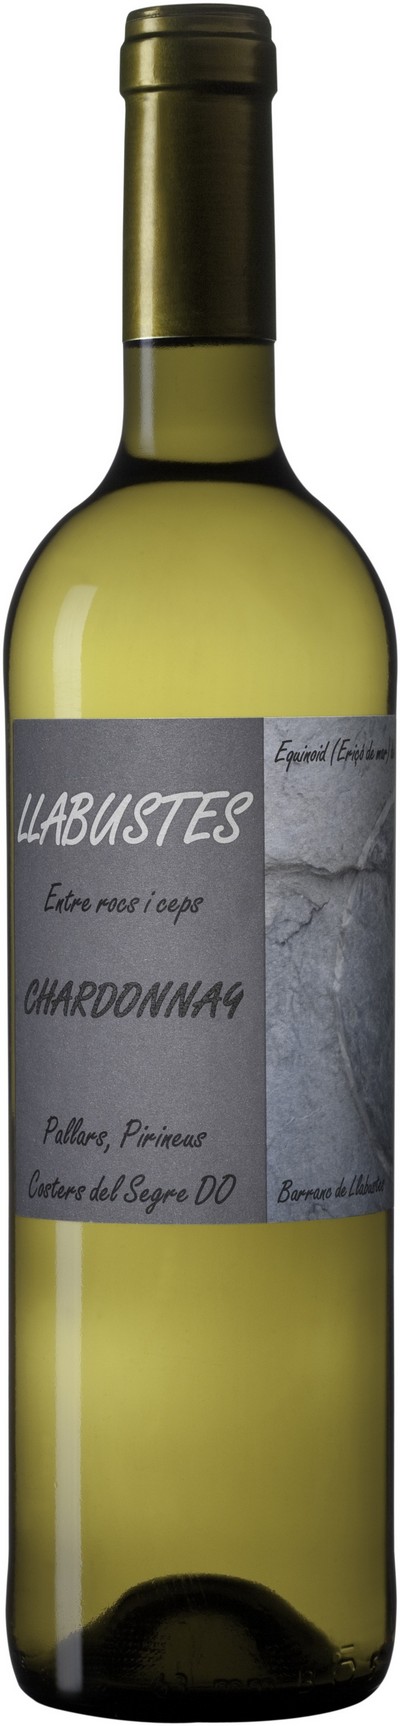 llabustes-chardonnay-2016